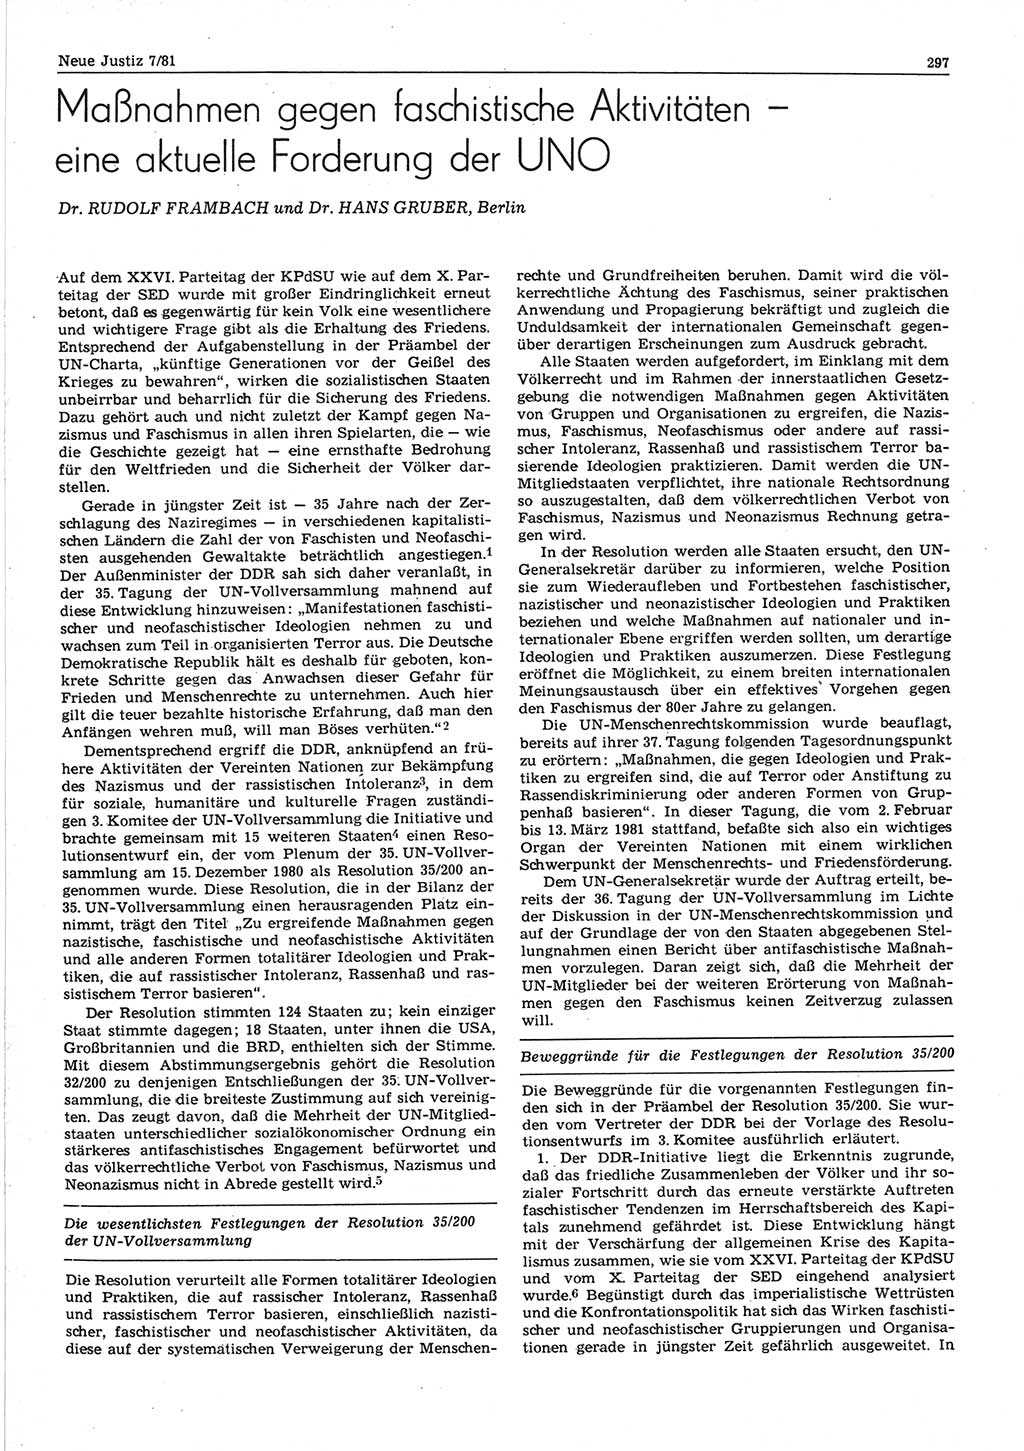 Neue Justiz (NJ), Zeitschrift für sozialistisches Recht und Gesetzlichkeit [Deutsche Demokratische Republik (DDR)], 35. Jahrgang 1981, Seite 297 (NJ DDR 1981, S. 297)